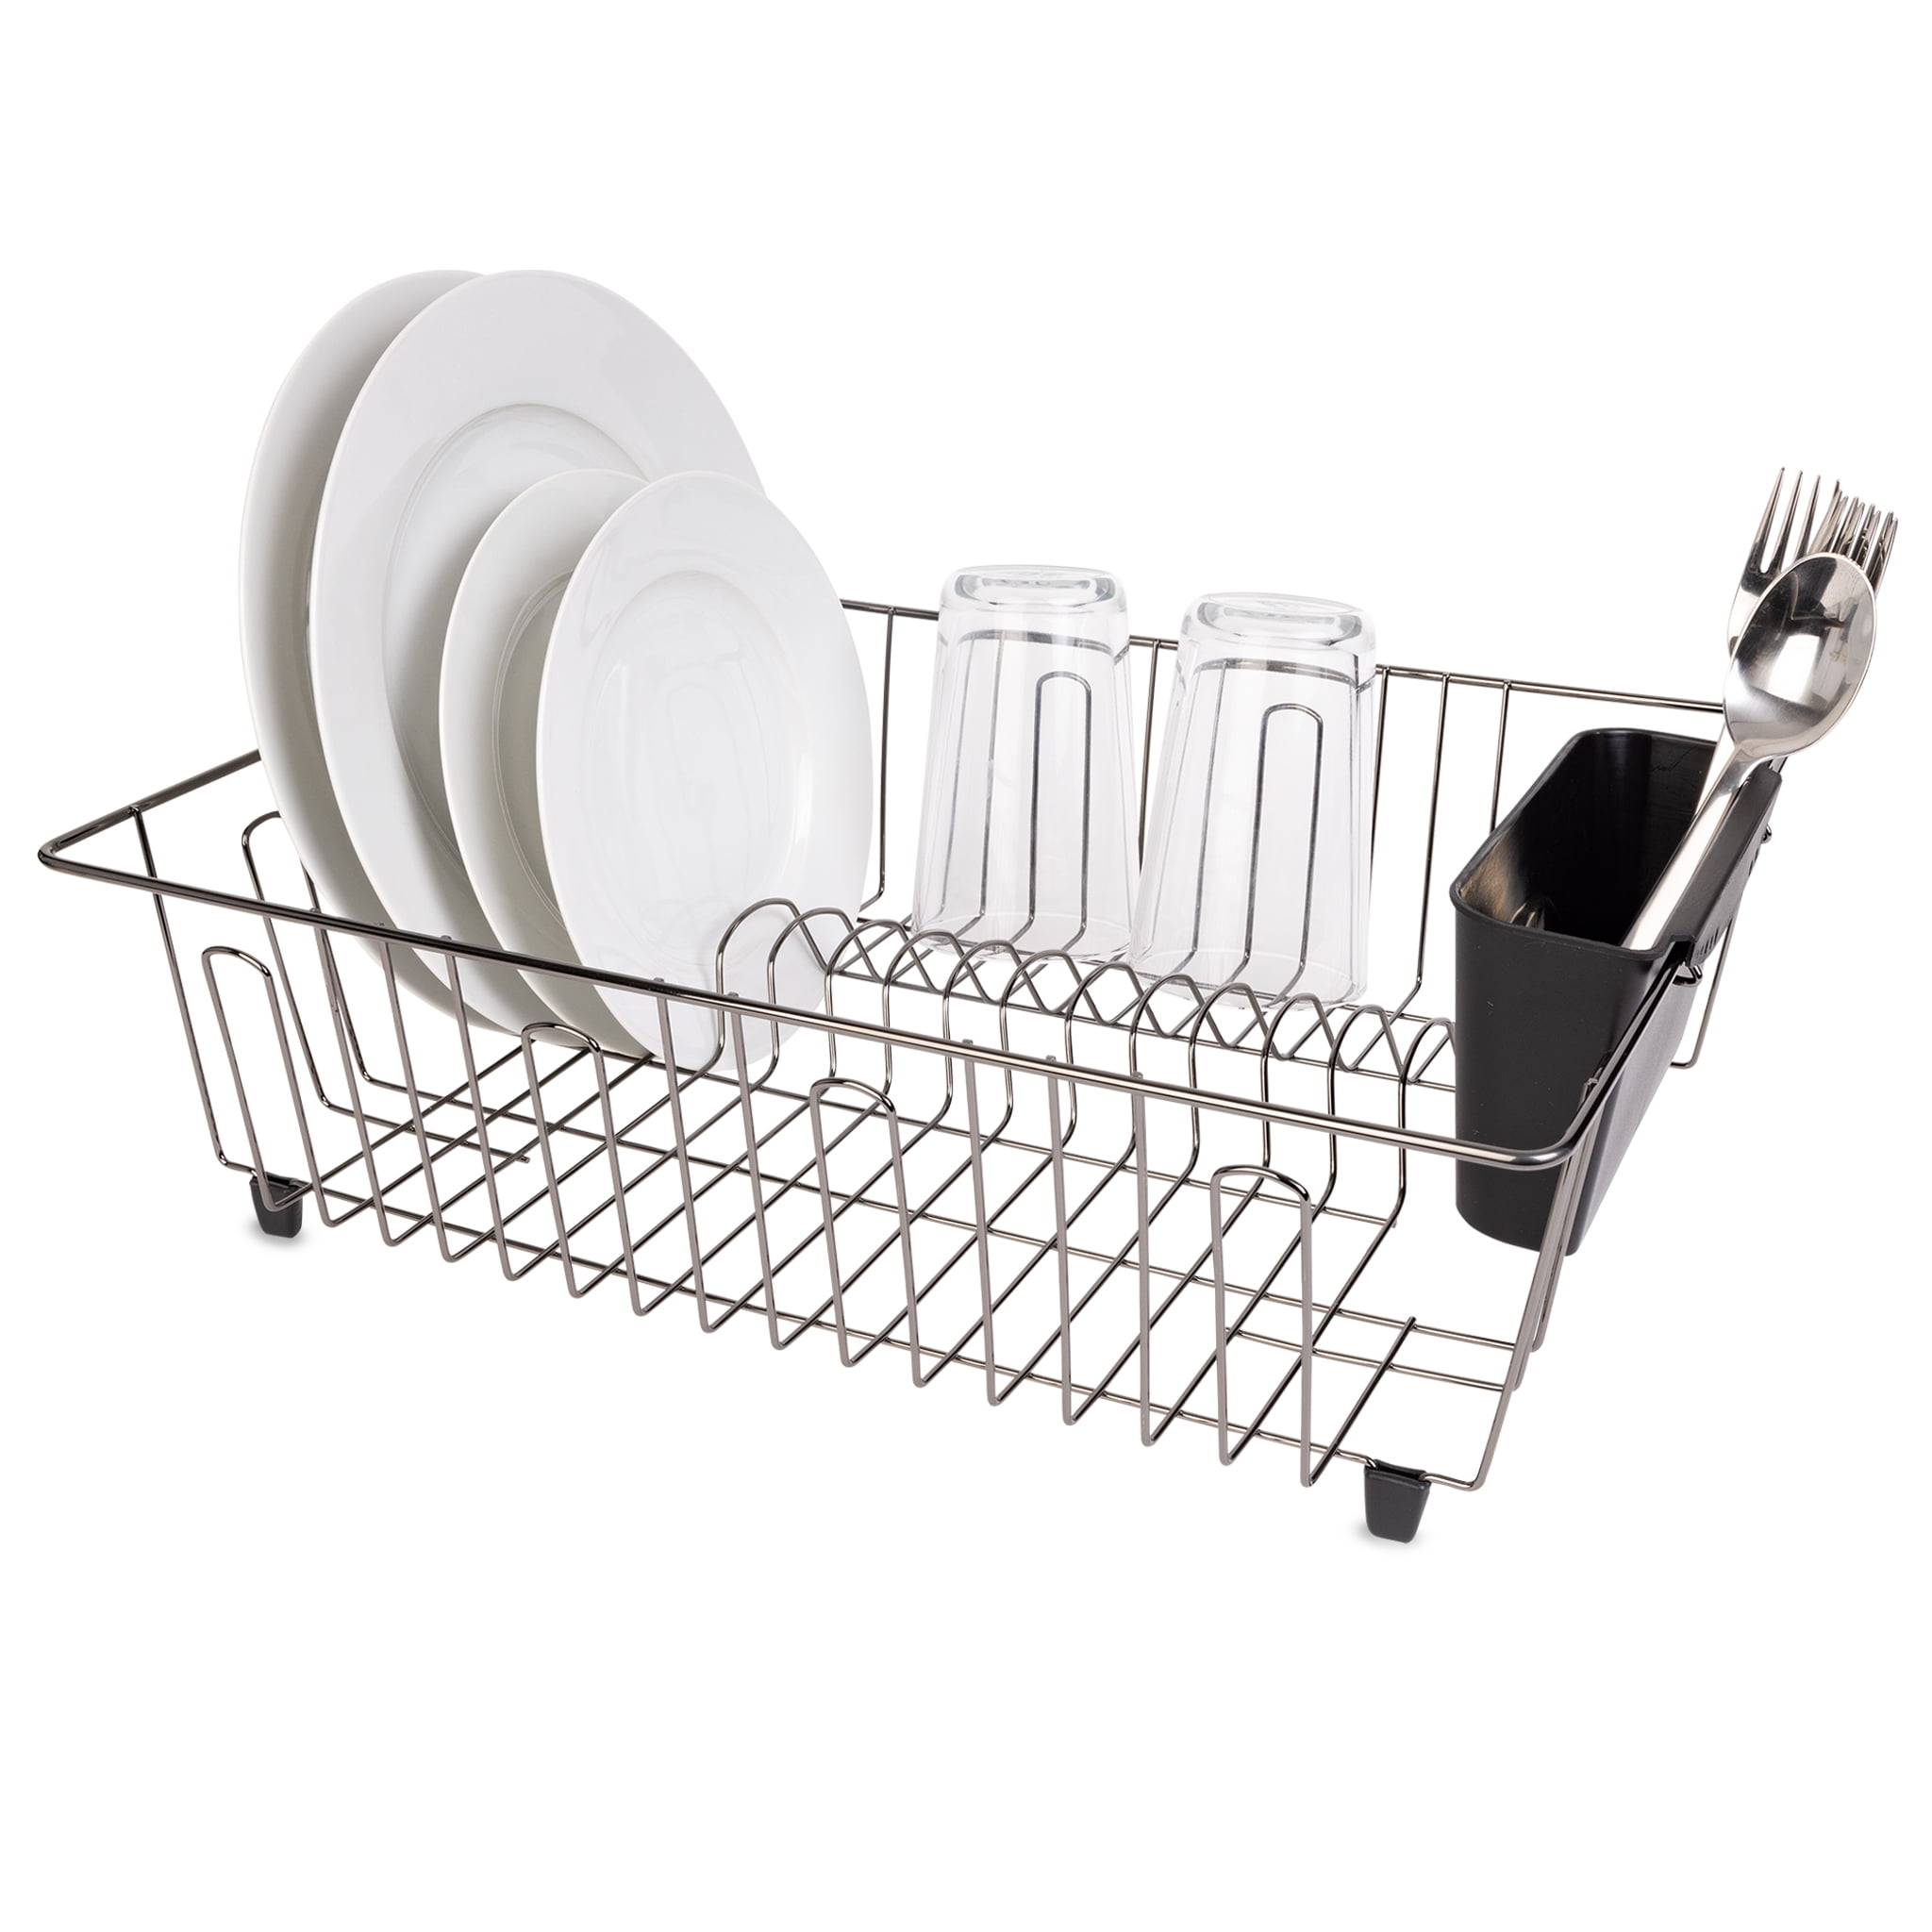 Dash SmartStore Full Size Dish Rack w/ Accessories 